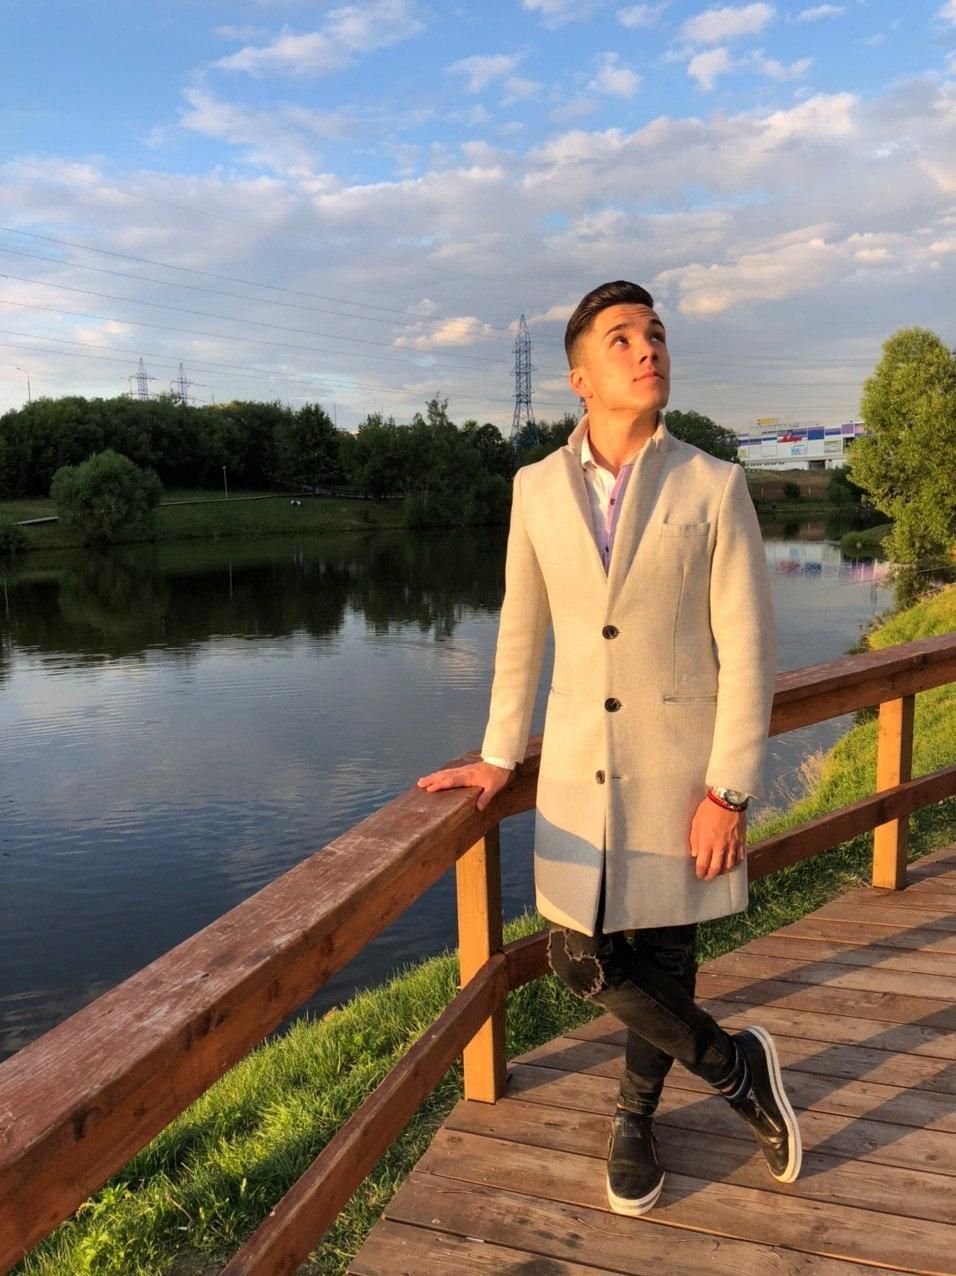 Семикратный чемпион Кыргызстана по бальным танцам, основатель имидж-студии для бальных танцев, владелец барбершопа Рустам Резванов